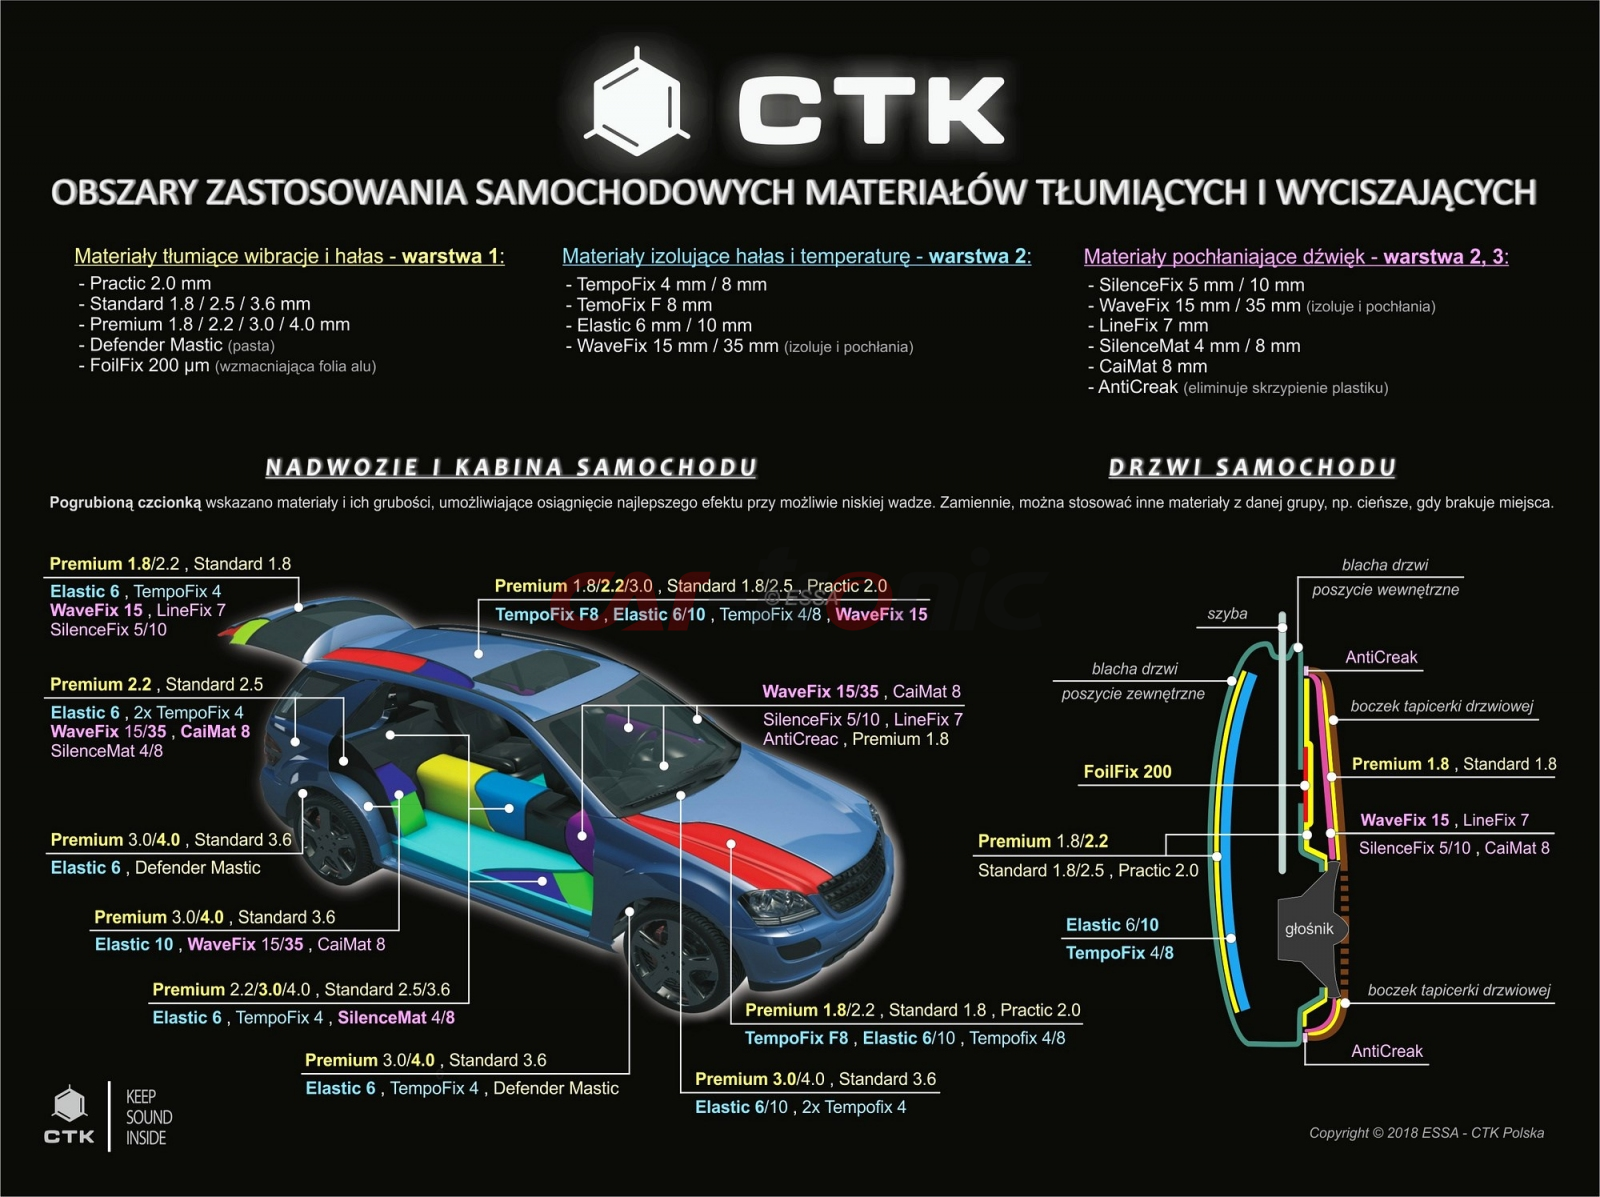 CTK Dominator 2.0 mm - mata tłumiąca 37x50cm, 1sz.